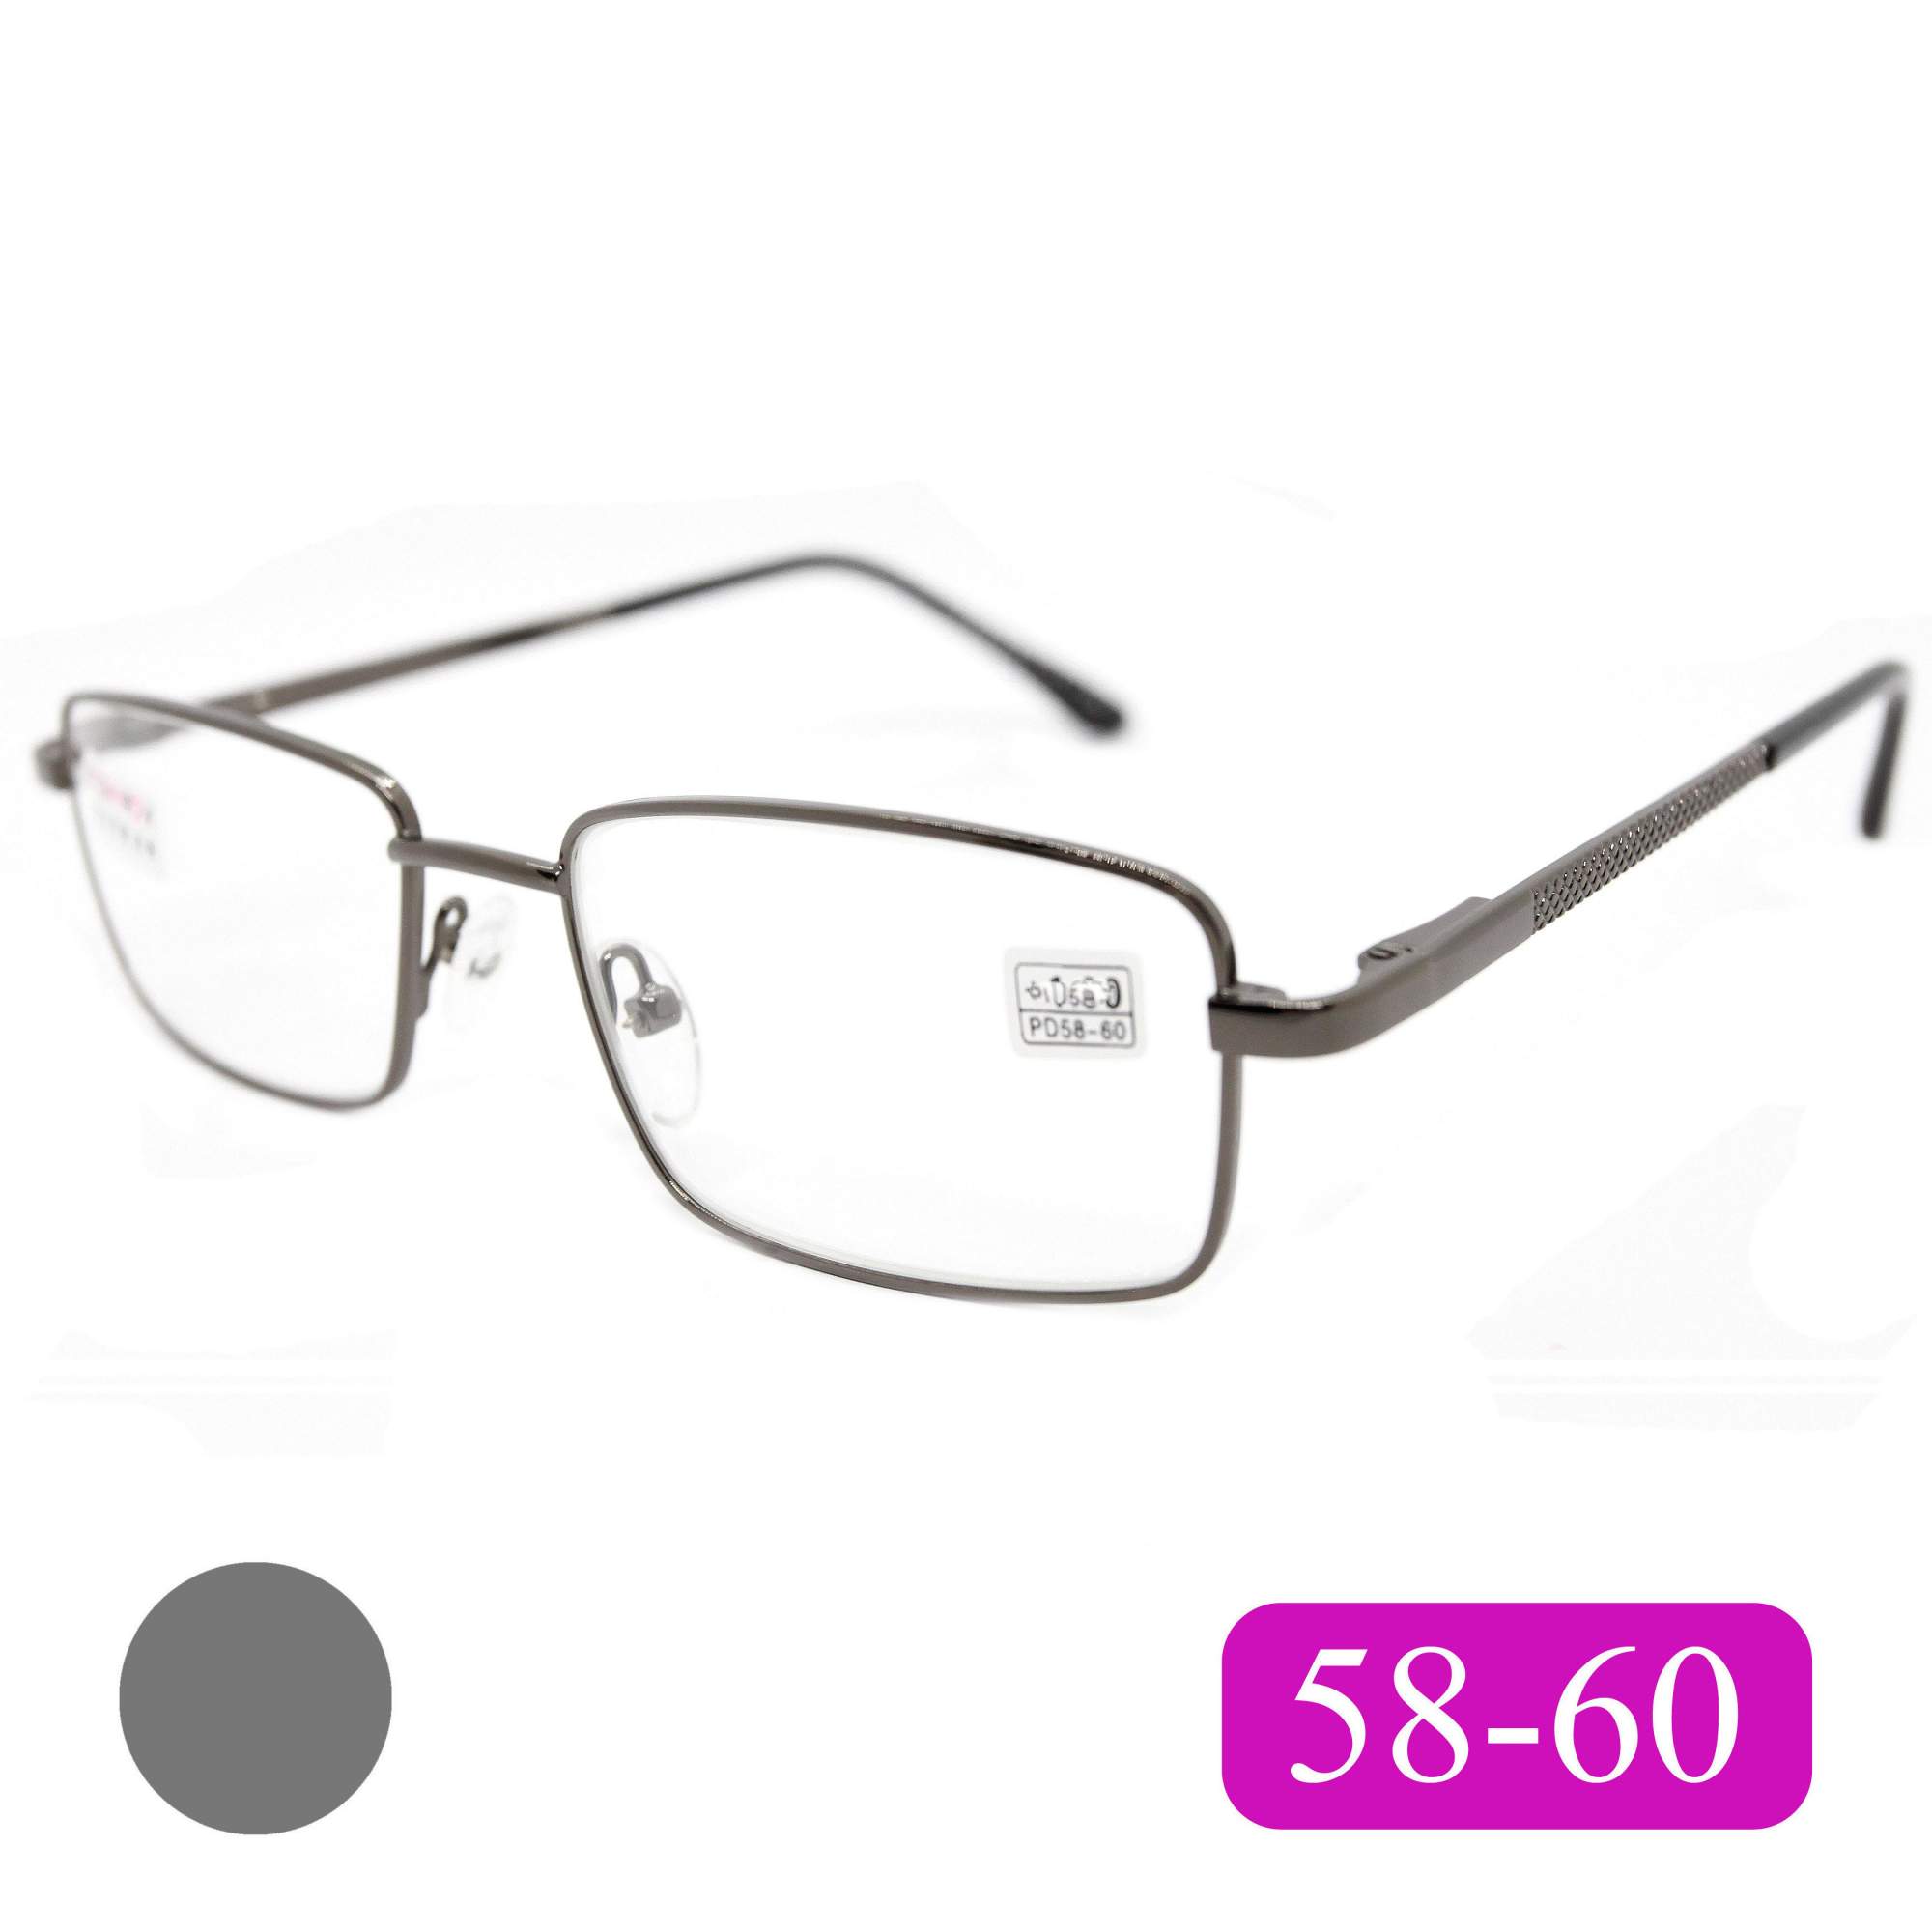 Готовые очки Fedrov 569, со стеклянной линзой, +3,25, без футляра, цвет серый, РЦ 58-60